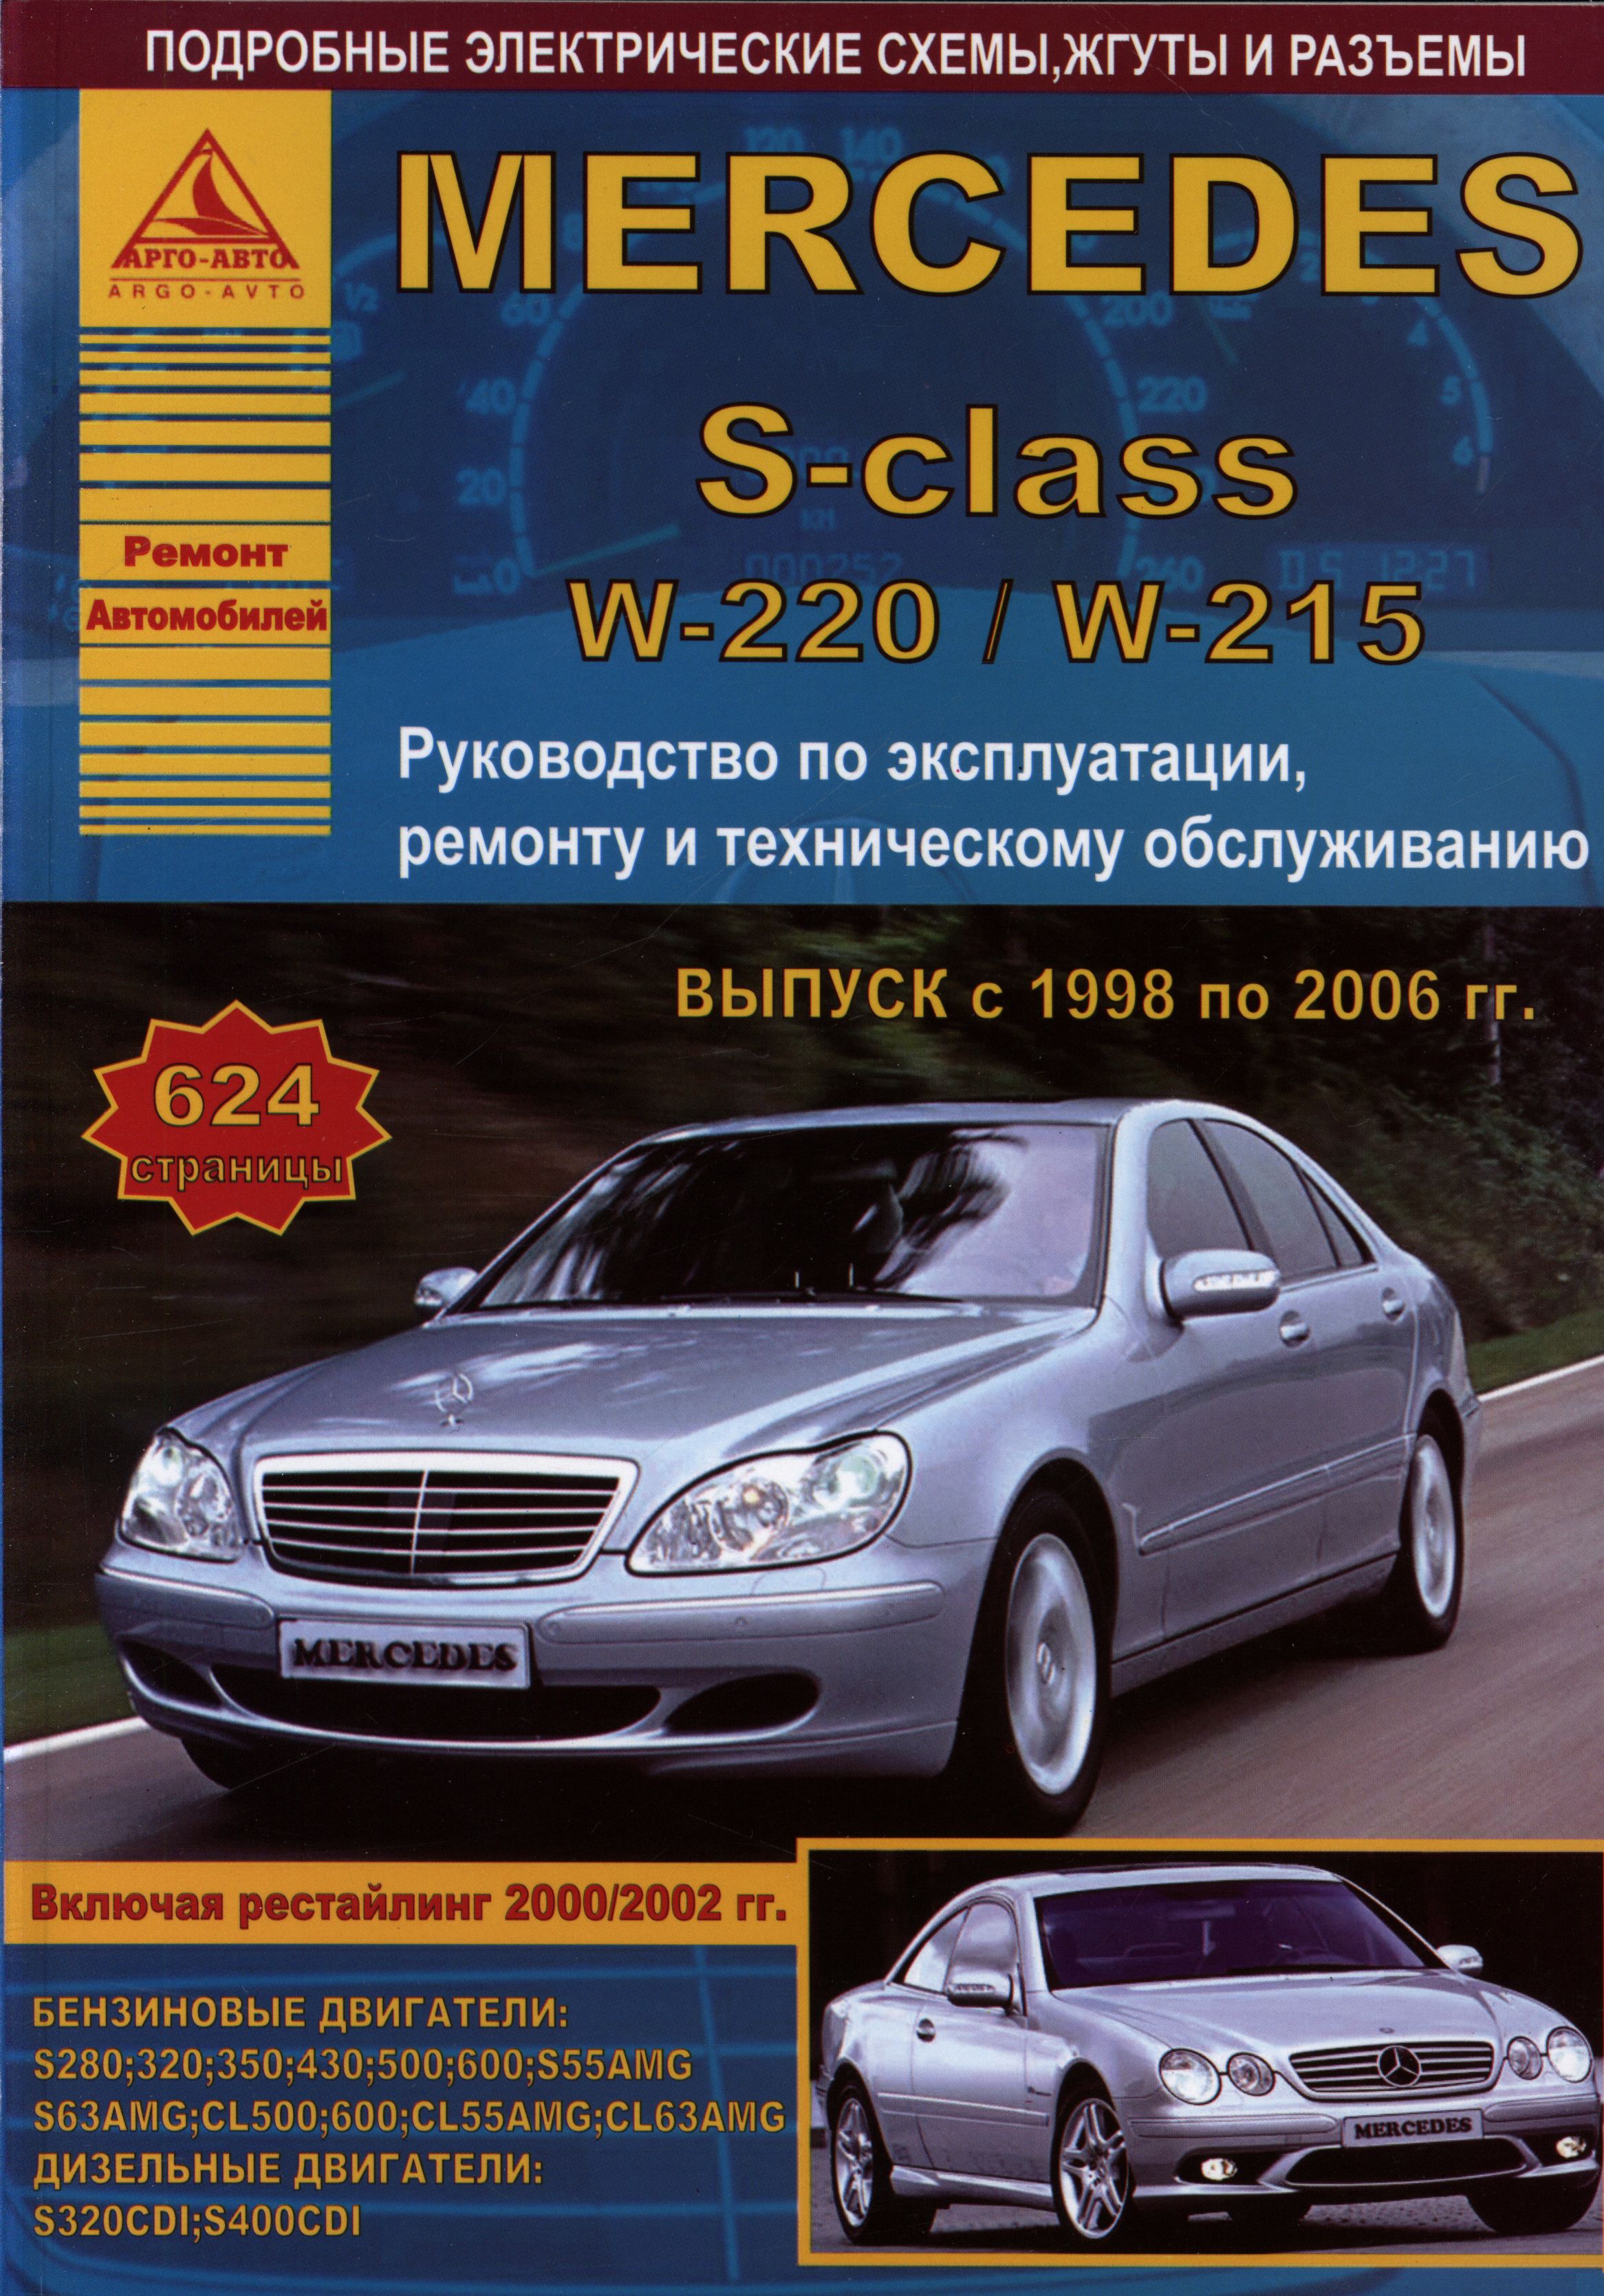 Руководство по ремонту и техническому обслуживанию автомобиля ГАЗ 31029 цветное